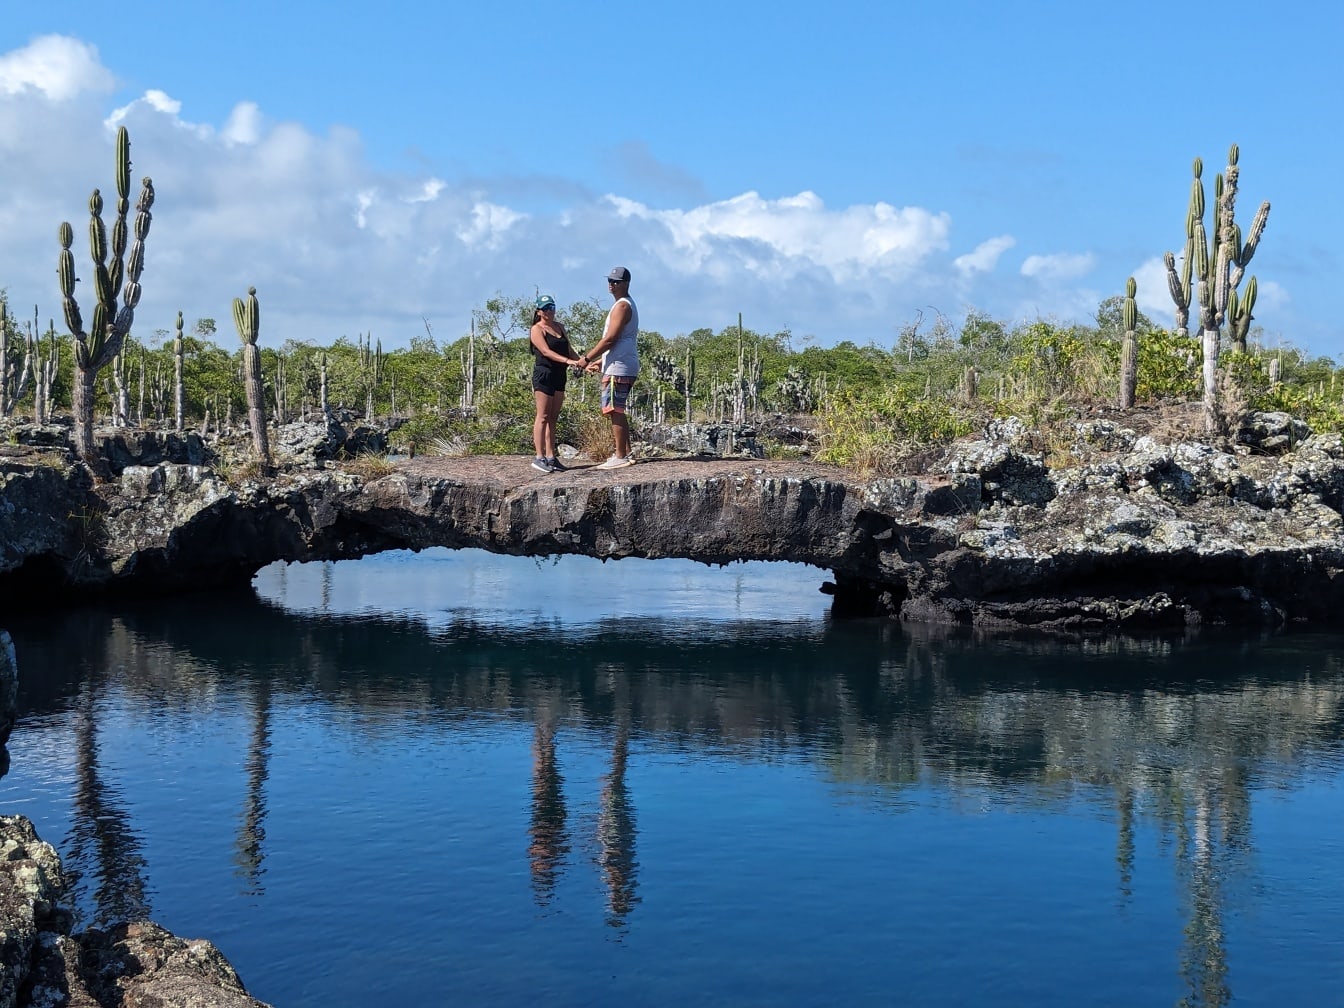 Muškarac i žena drže se za ruke stojeći na kamenom mostu preko vode na otoku Isabela u prirodnom parku na Galapagosu